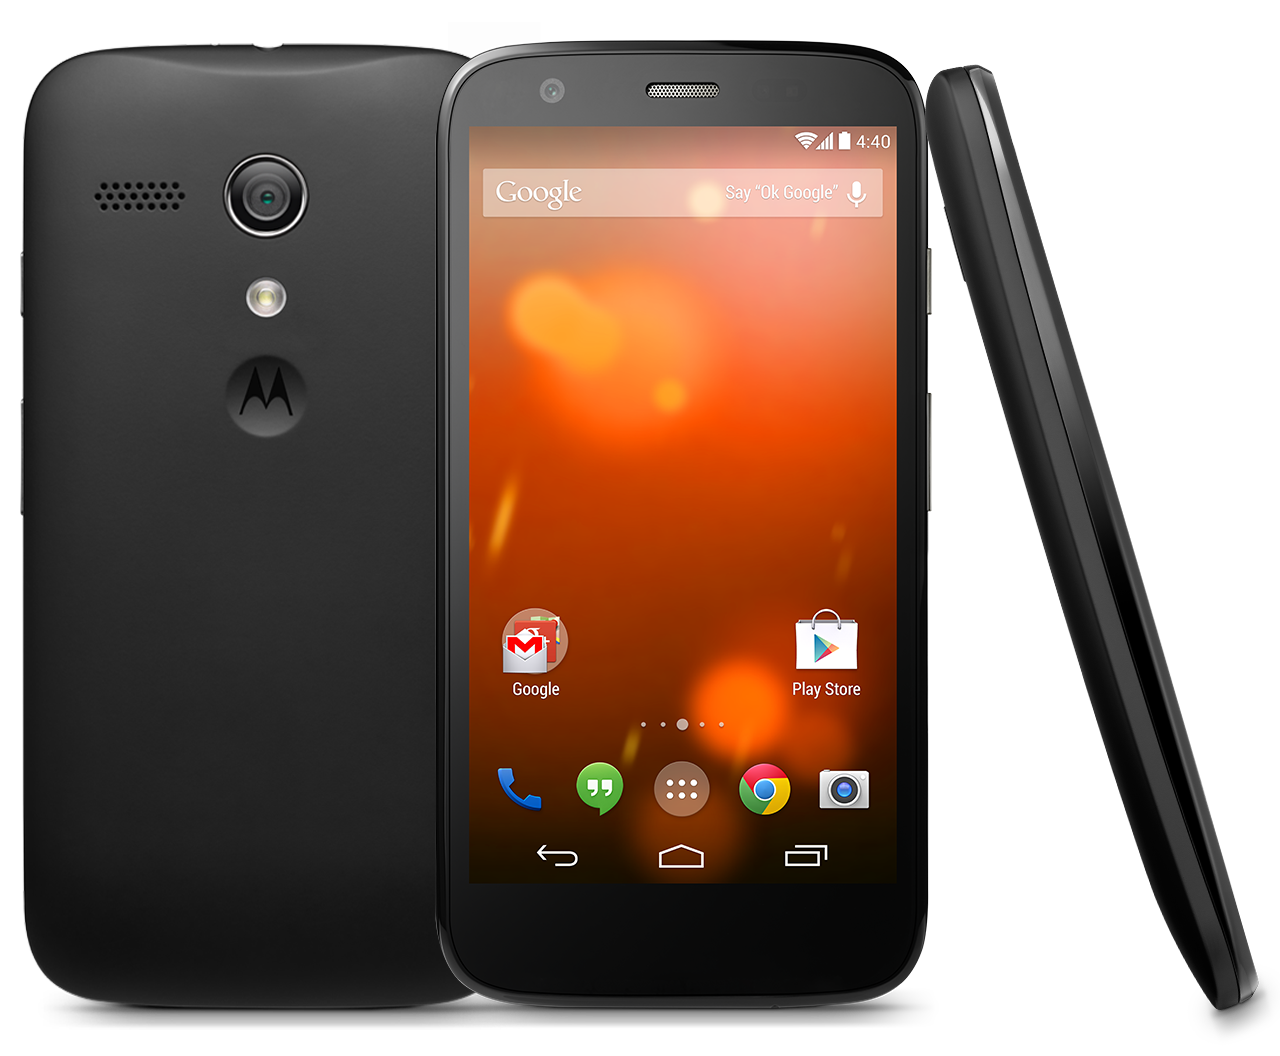 Motorola Moto G Dual SIM specs, review, release date - PhonesData